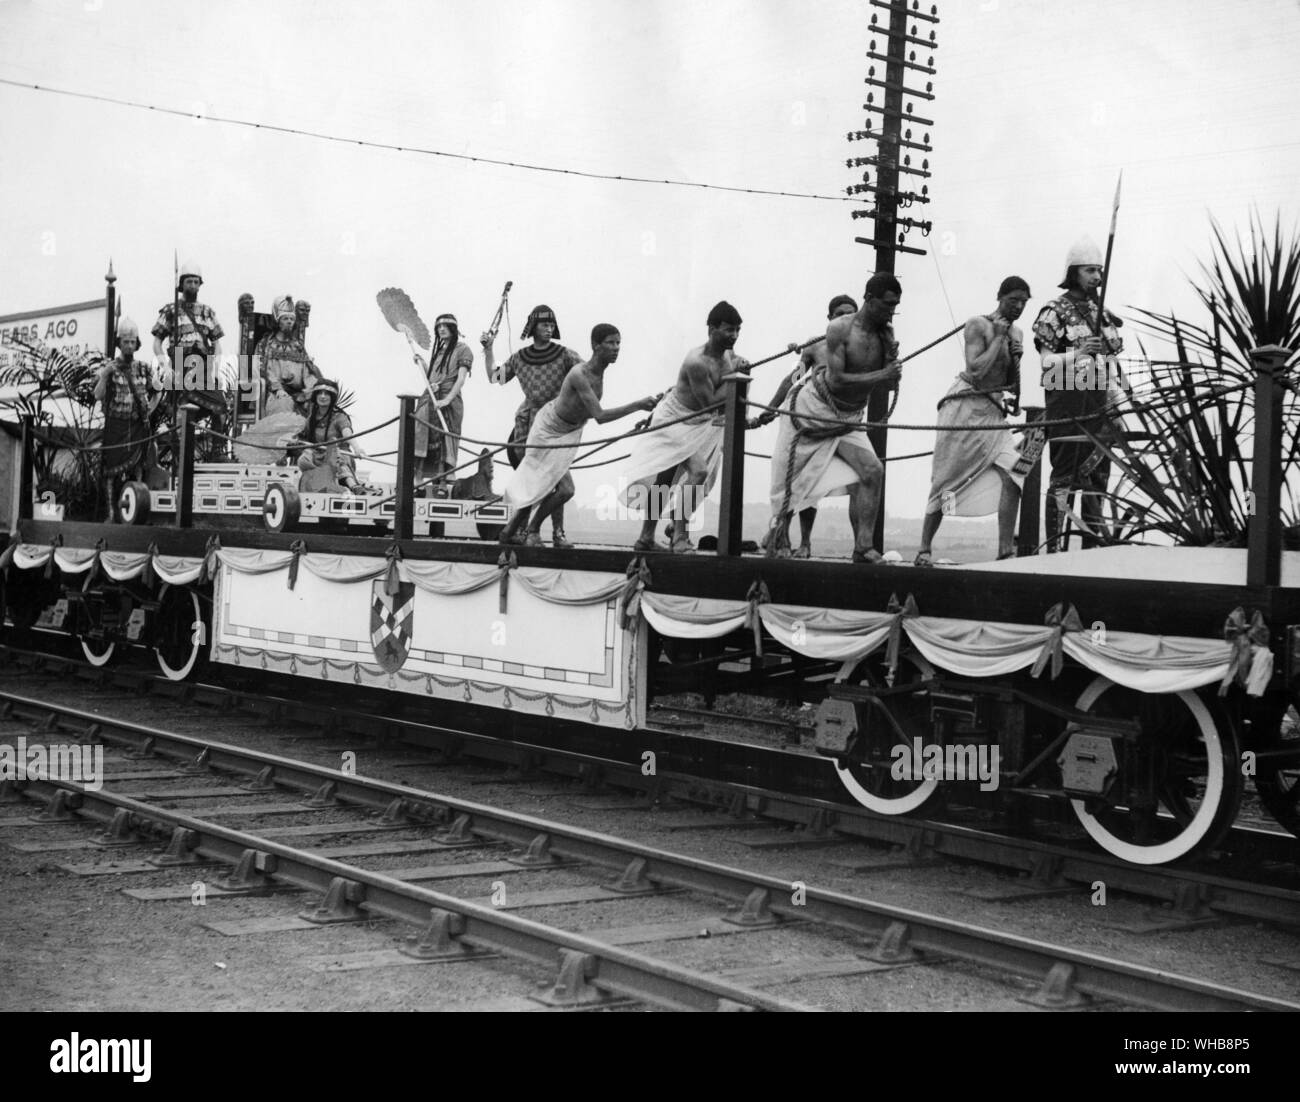 Das tägliche Leben - eine der Tableaus in der Prozession Die Entwicklung des Rades - Frühe ägyptische. 1925. Stockfoto